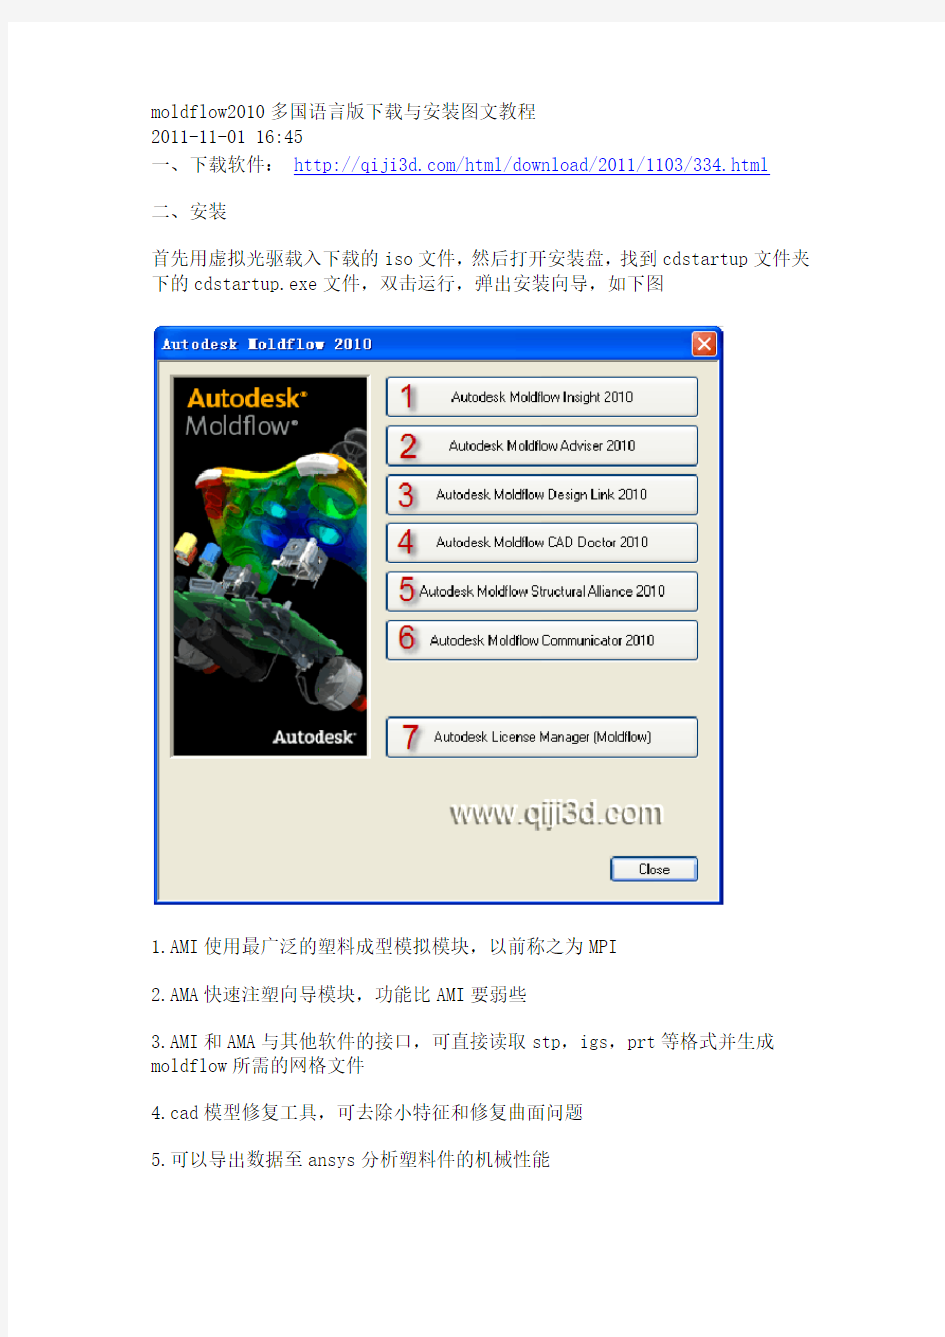 moldflow2010多国语言版下载与安装图文教程